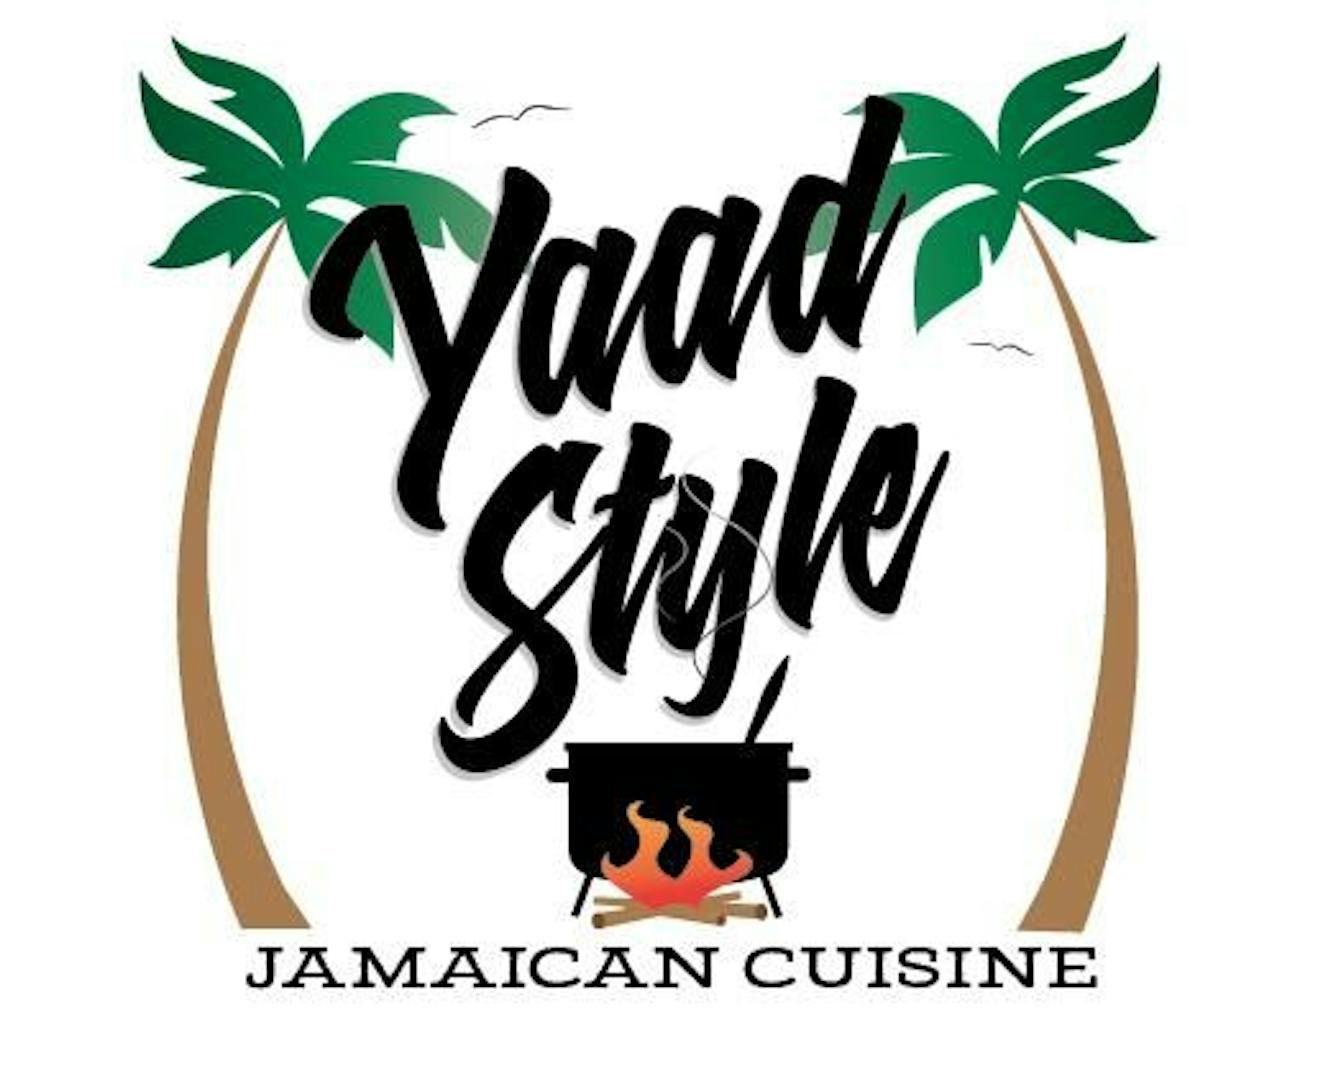 Yaad Style Jamaican Cuisine